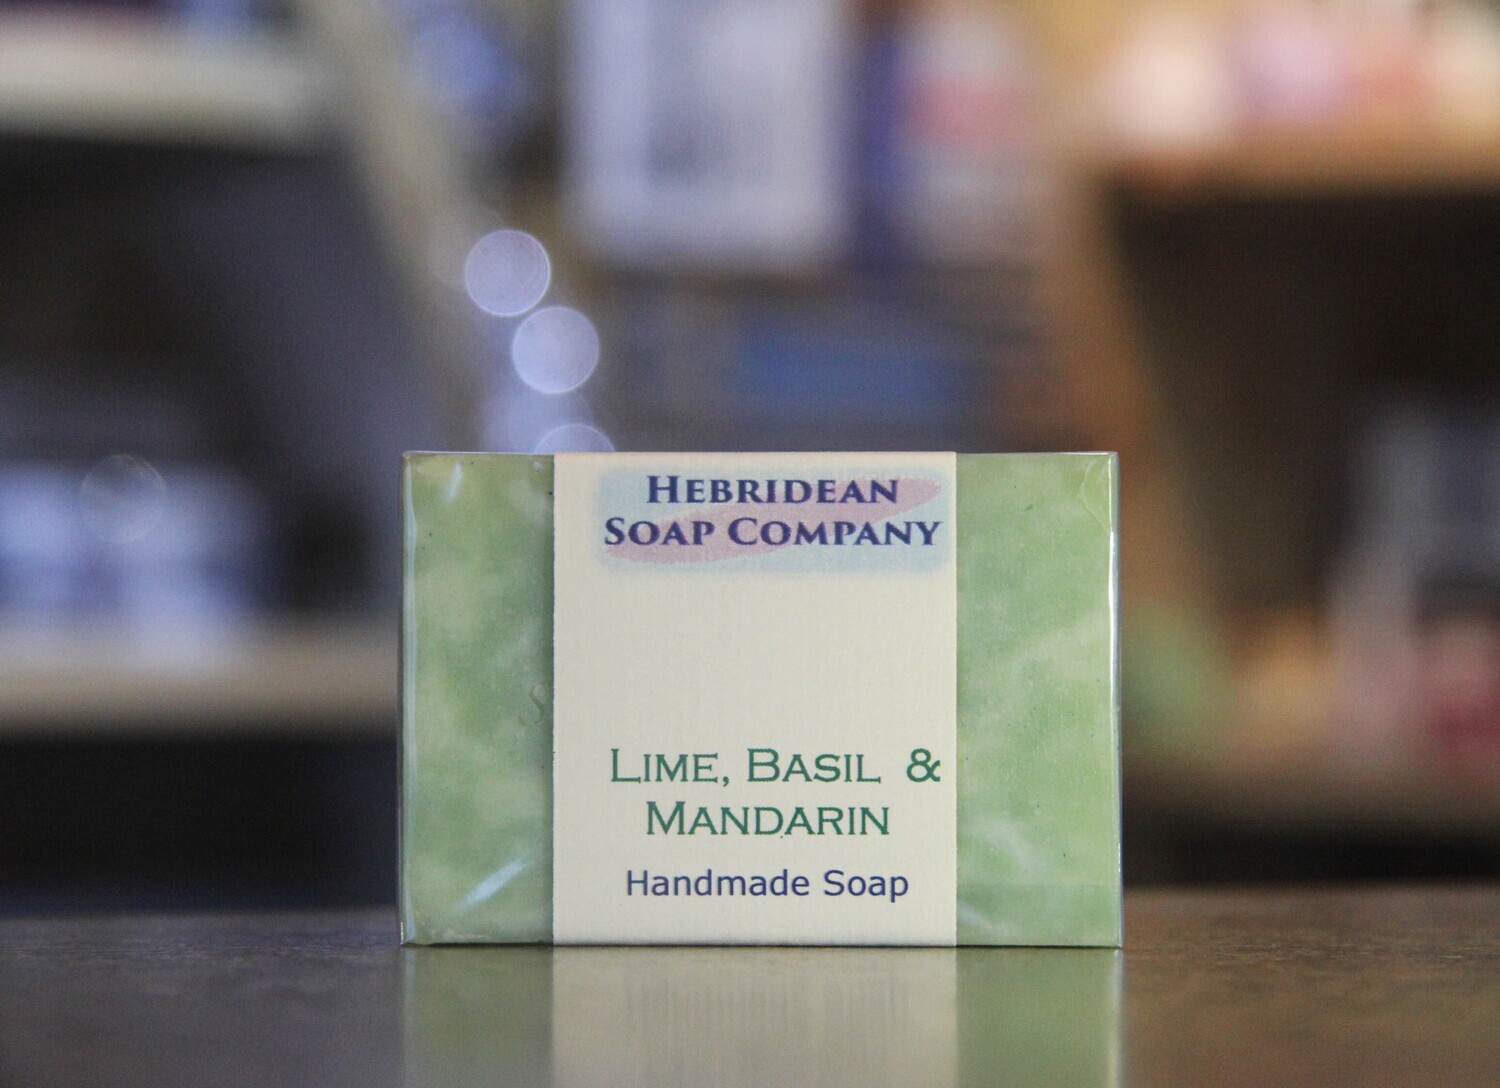 Lime, basil & mandarin soap